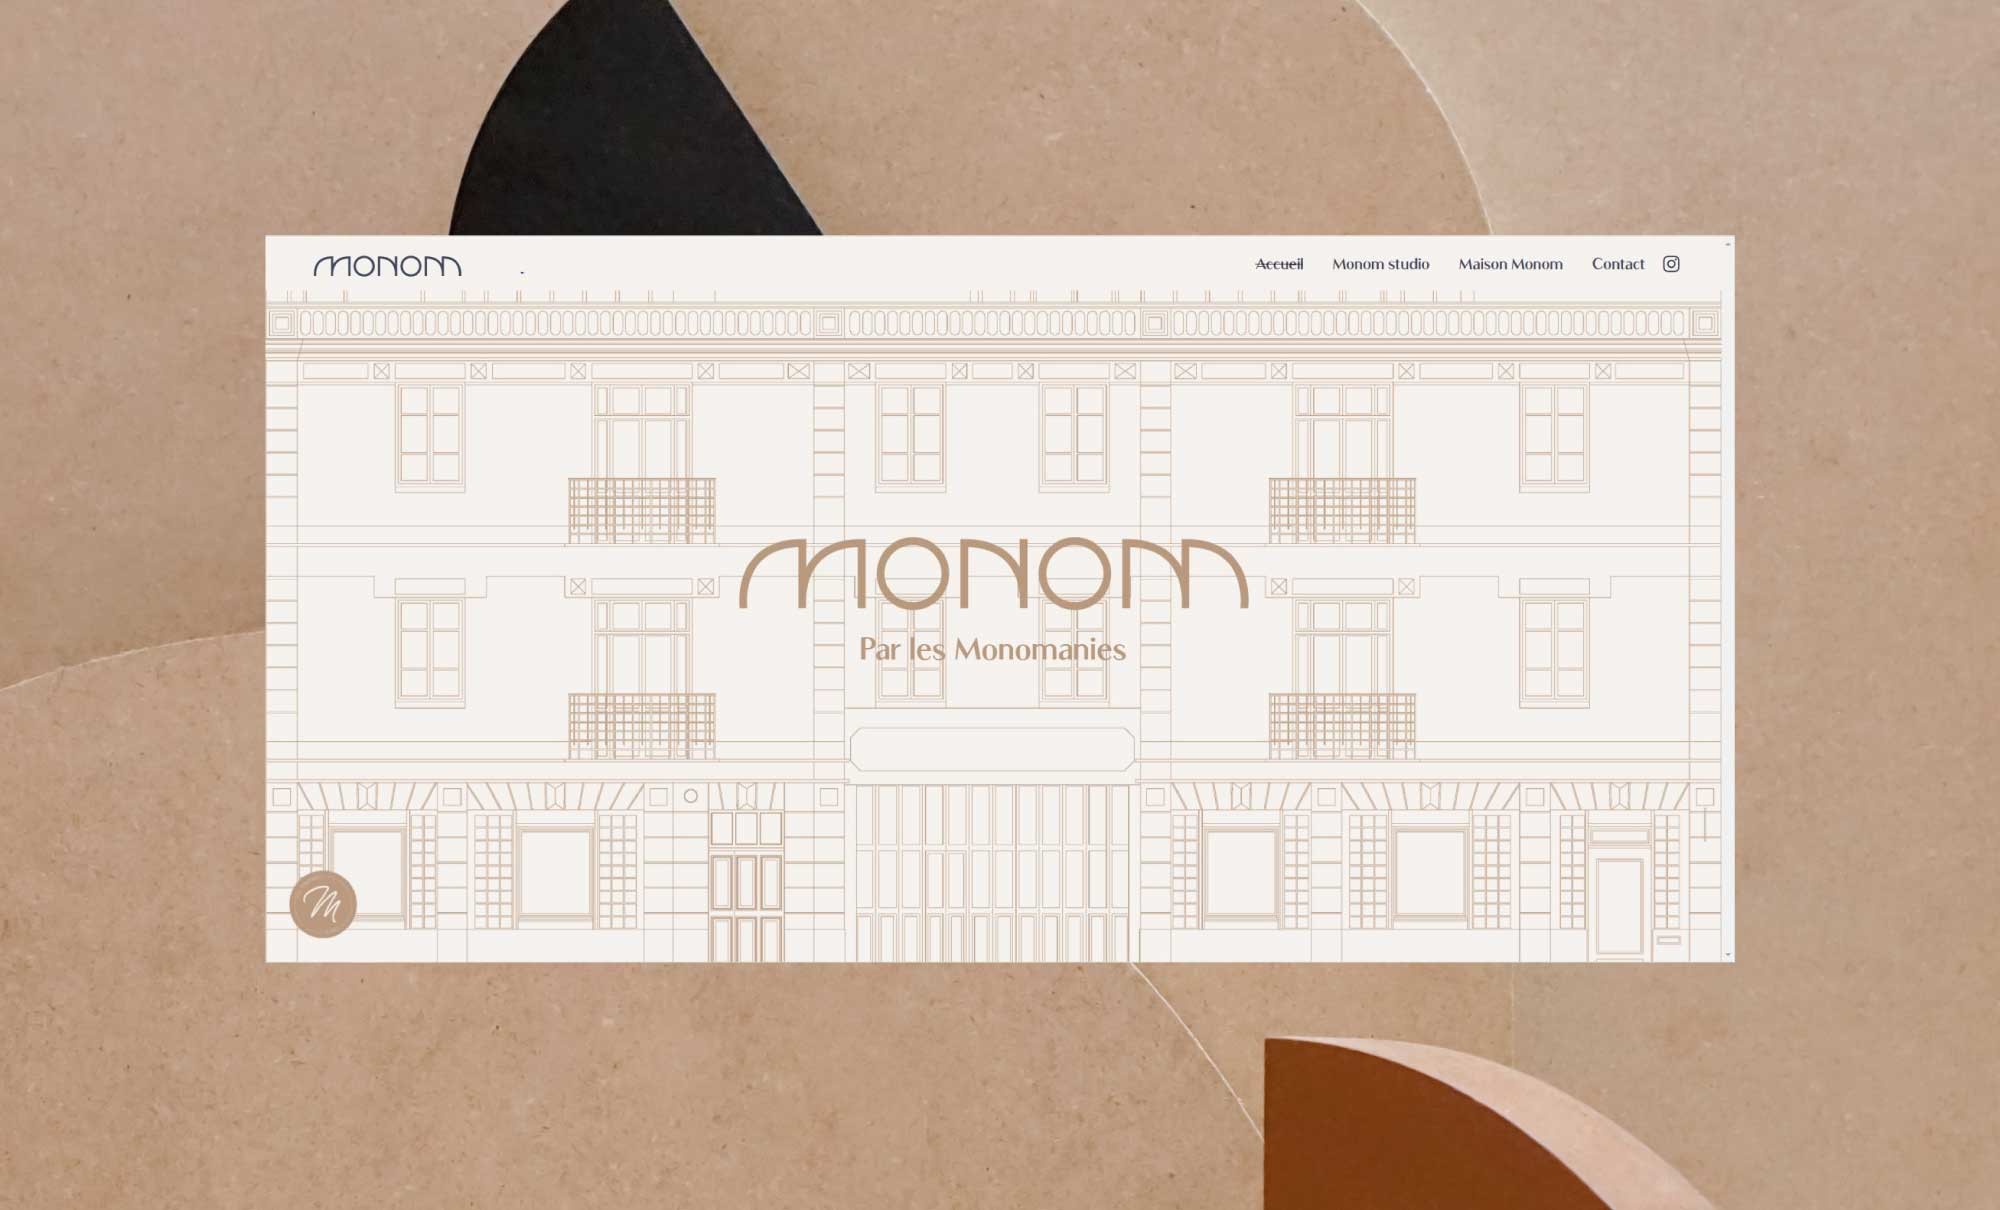 Présentation de la page d'accueil de l'entreprise Monom sur fond beige avec des formes marrons et noires. Identité visuelle réalisée par ÈS.B Studio.